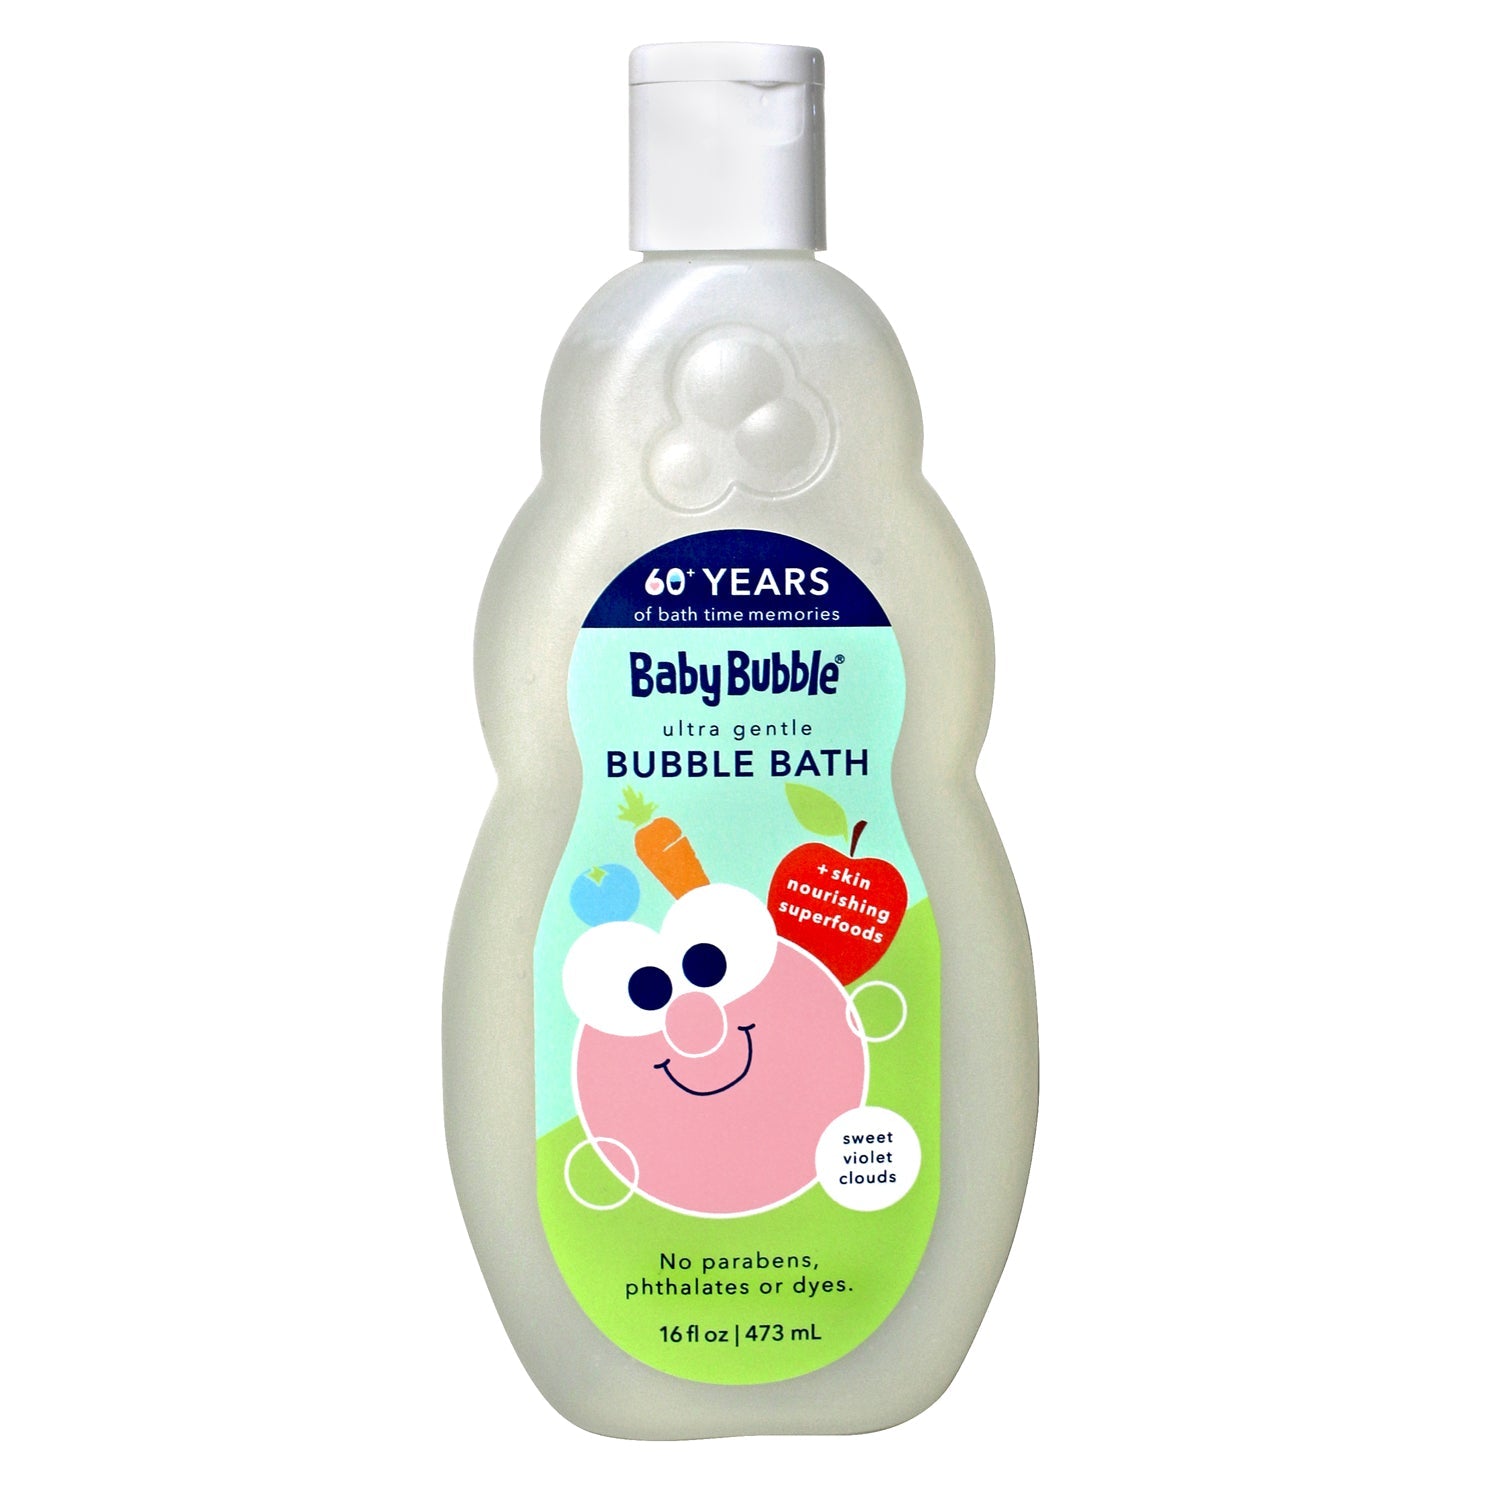 Baby Bubble Ultra Gentle Bubble Bath